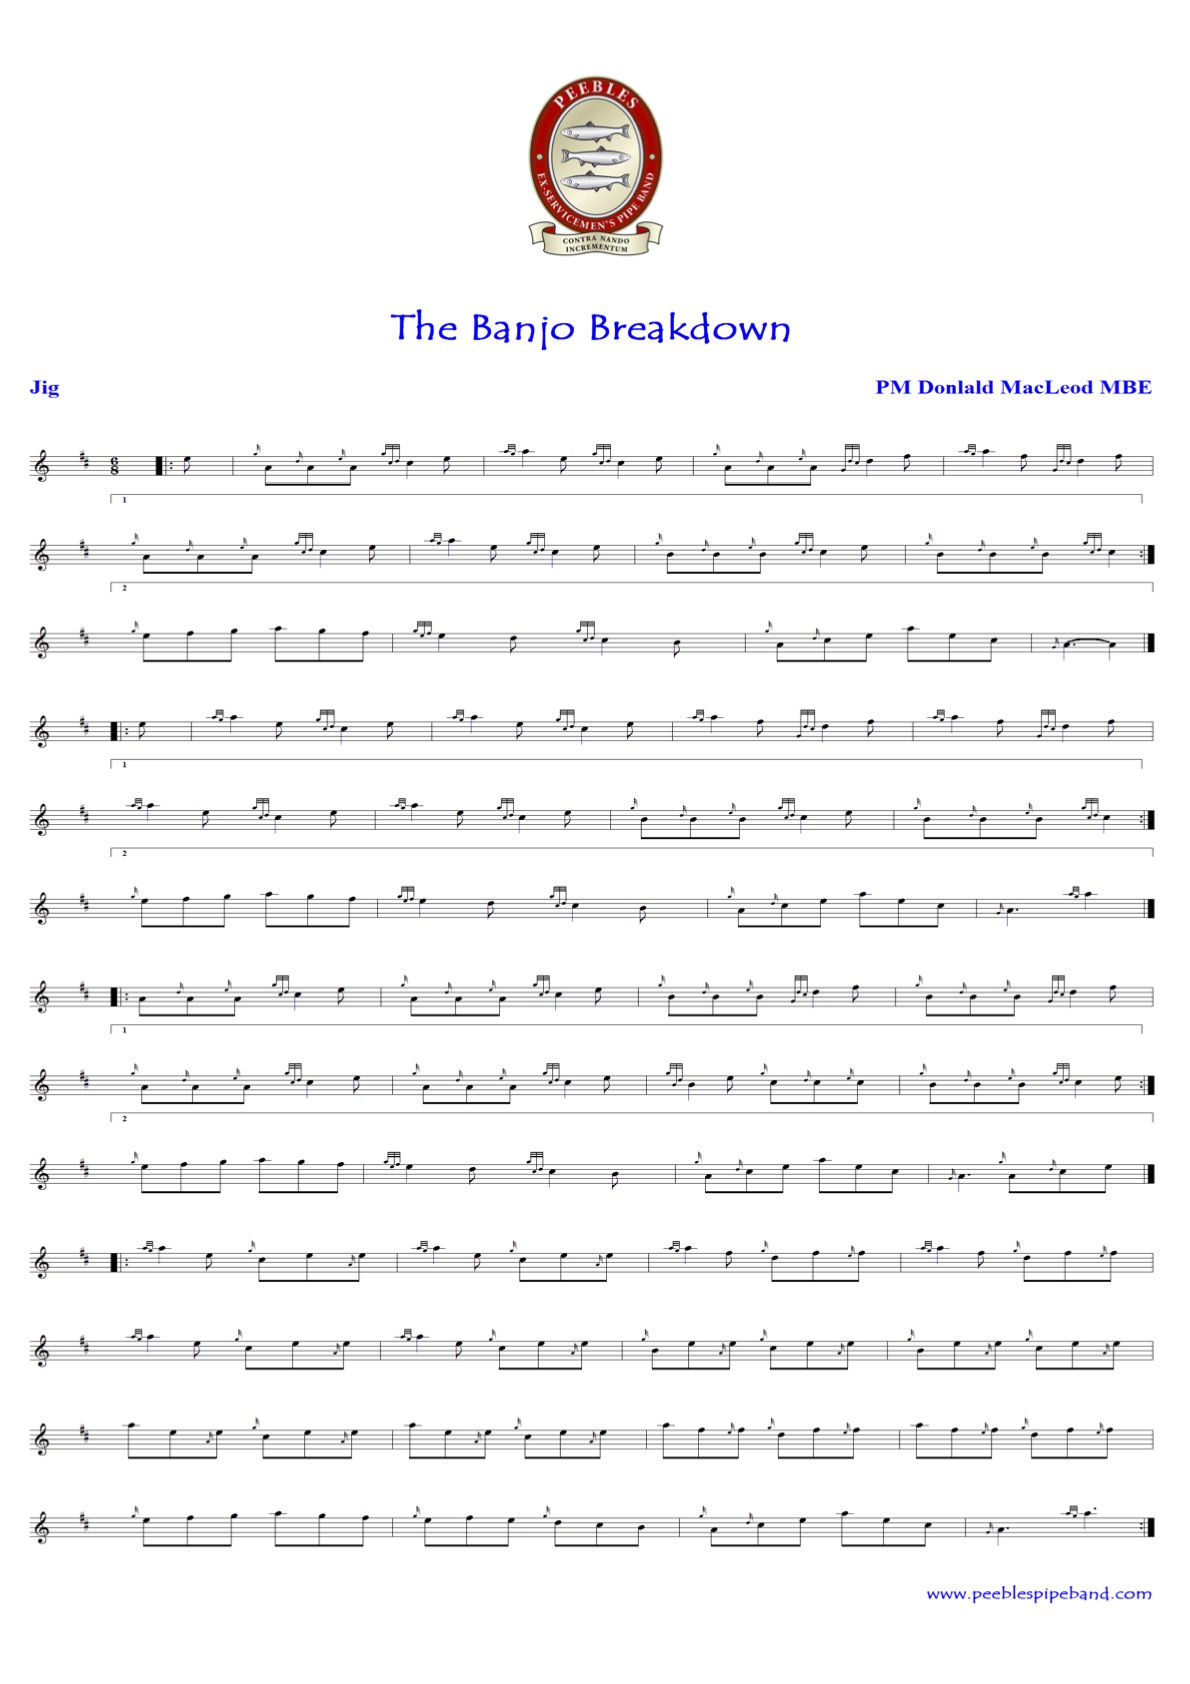 The Banjo Breakdown